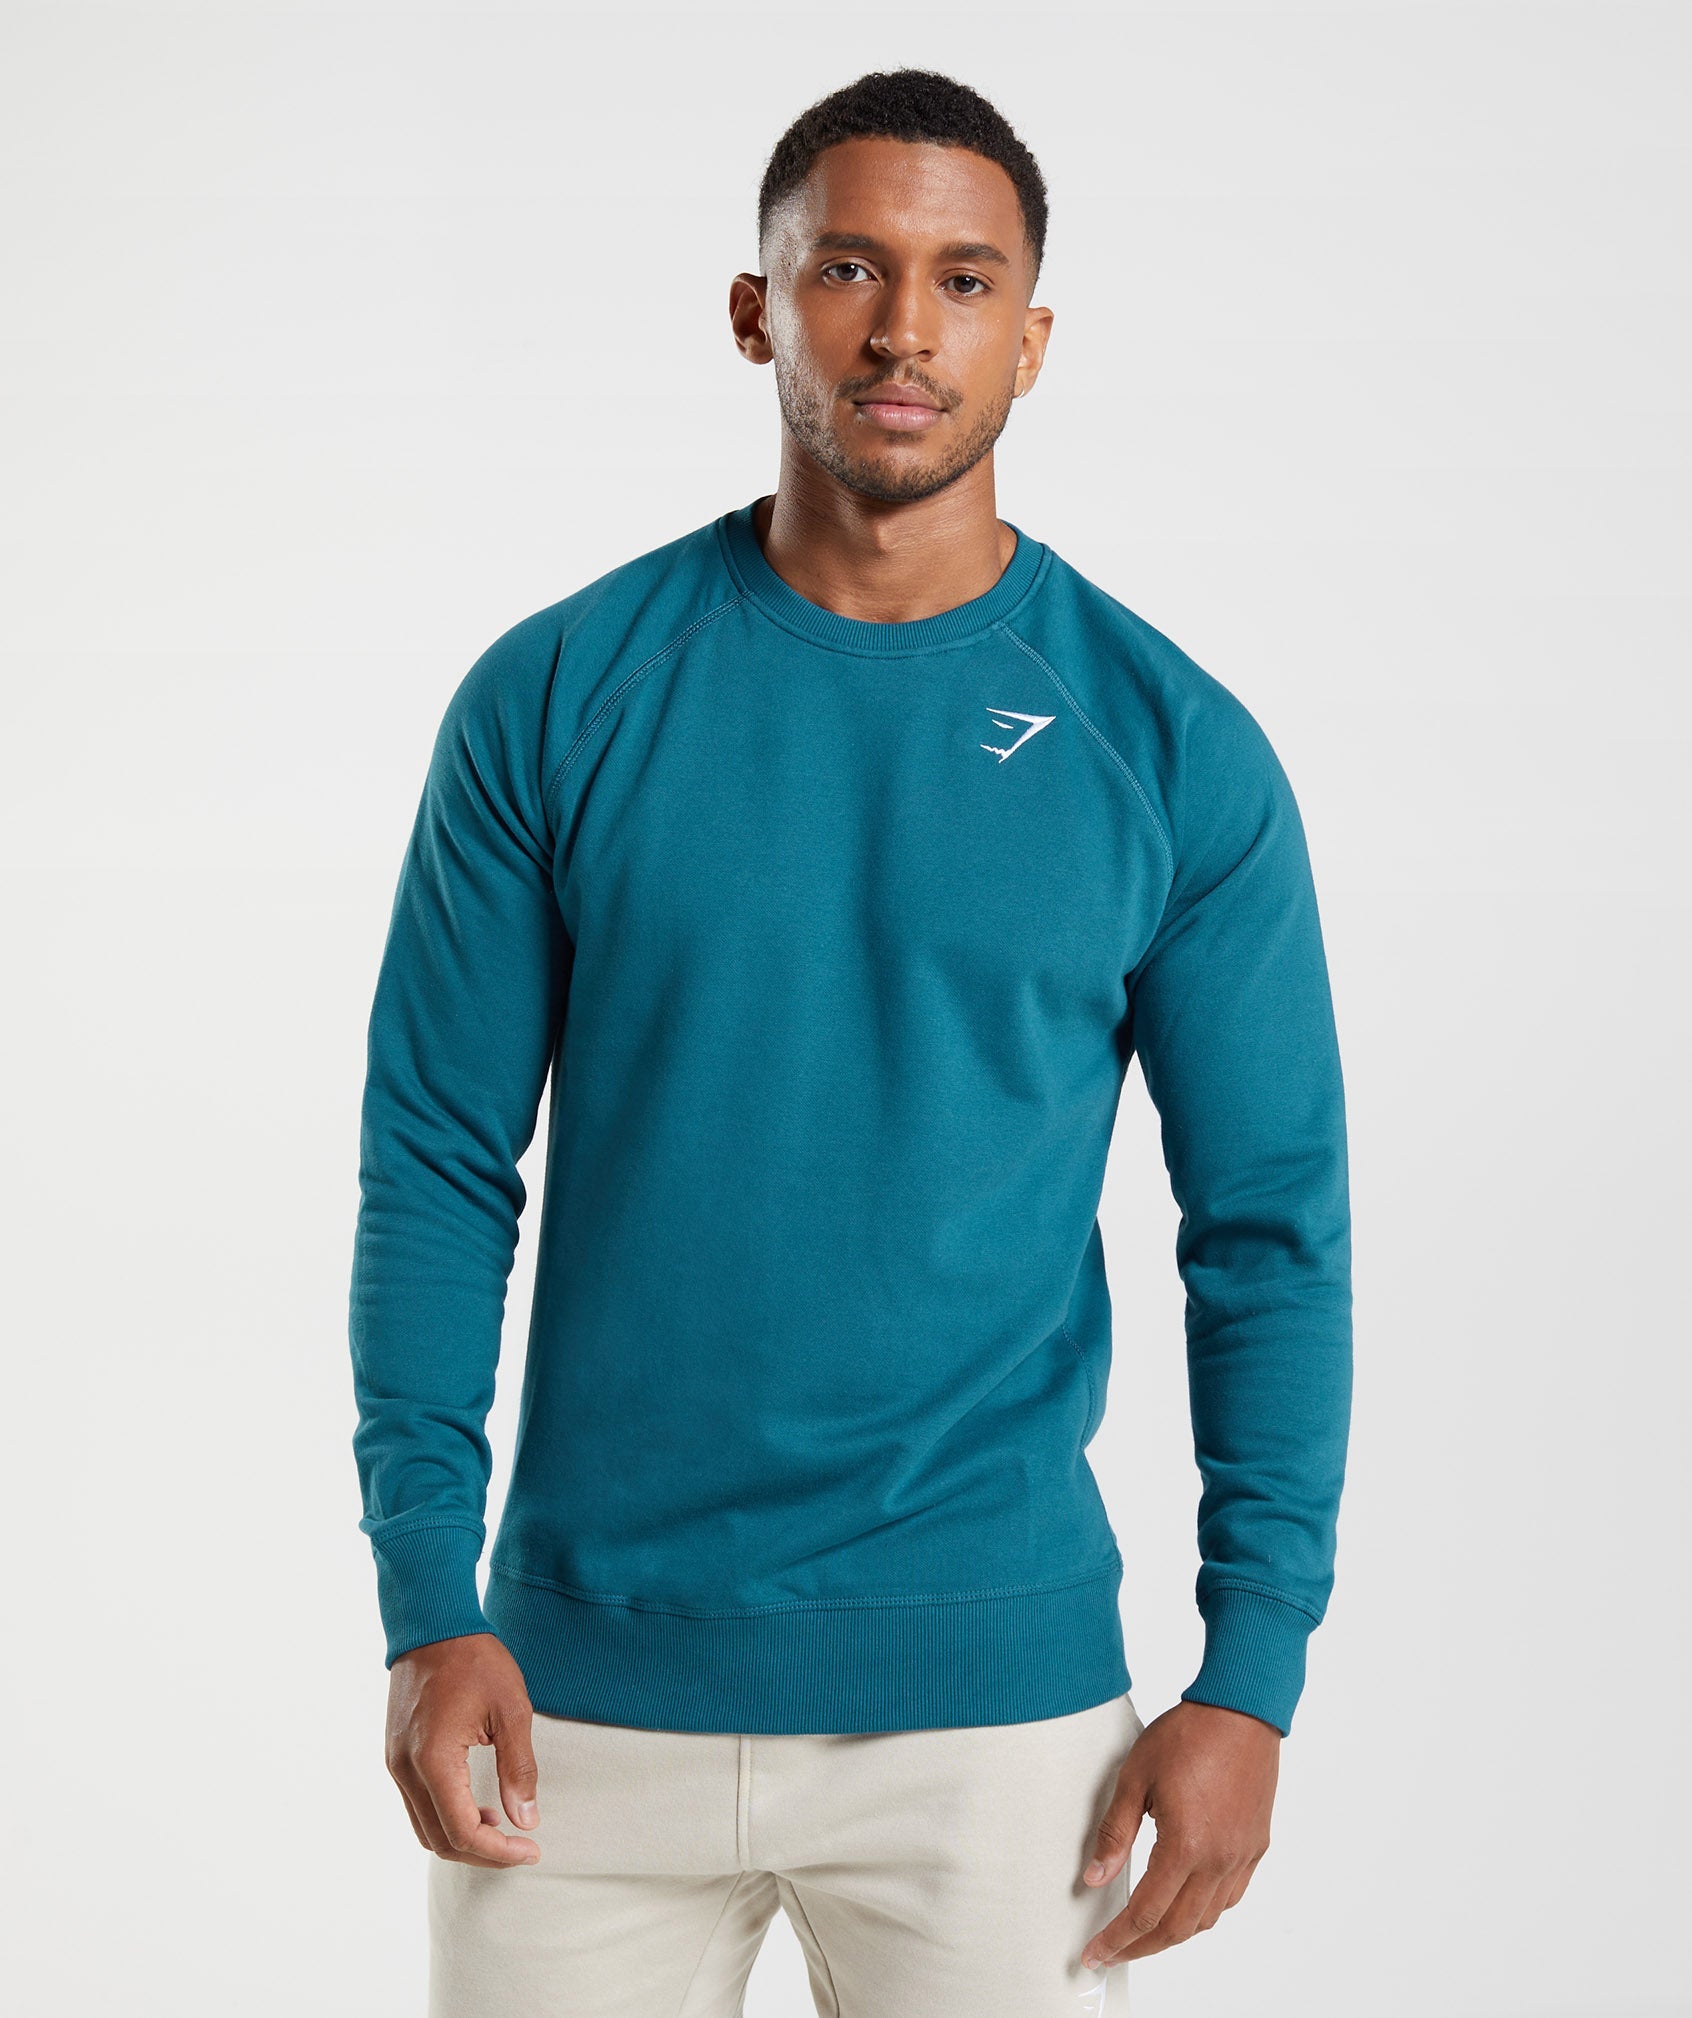 Crest Sweatshirt in Atlantic Blue - view 1